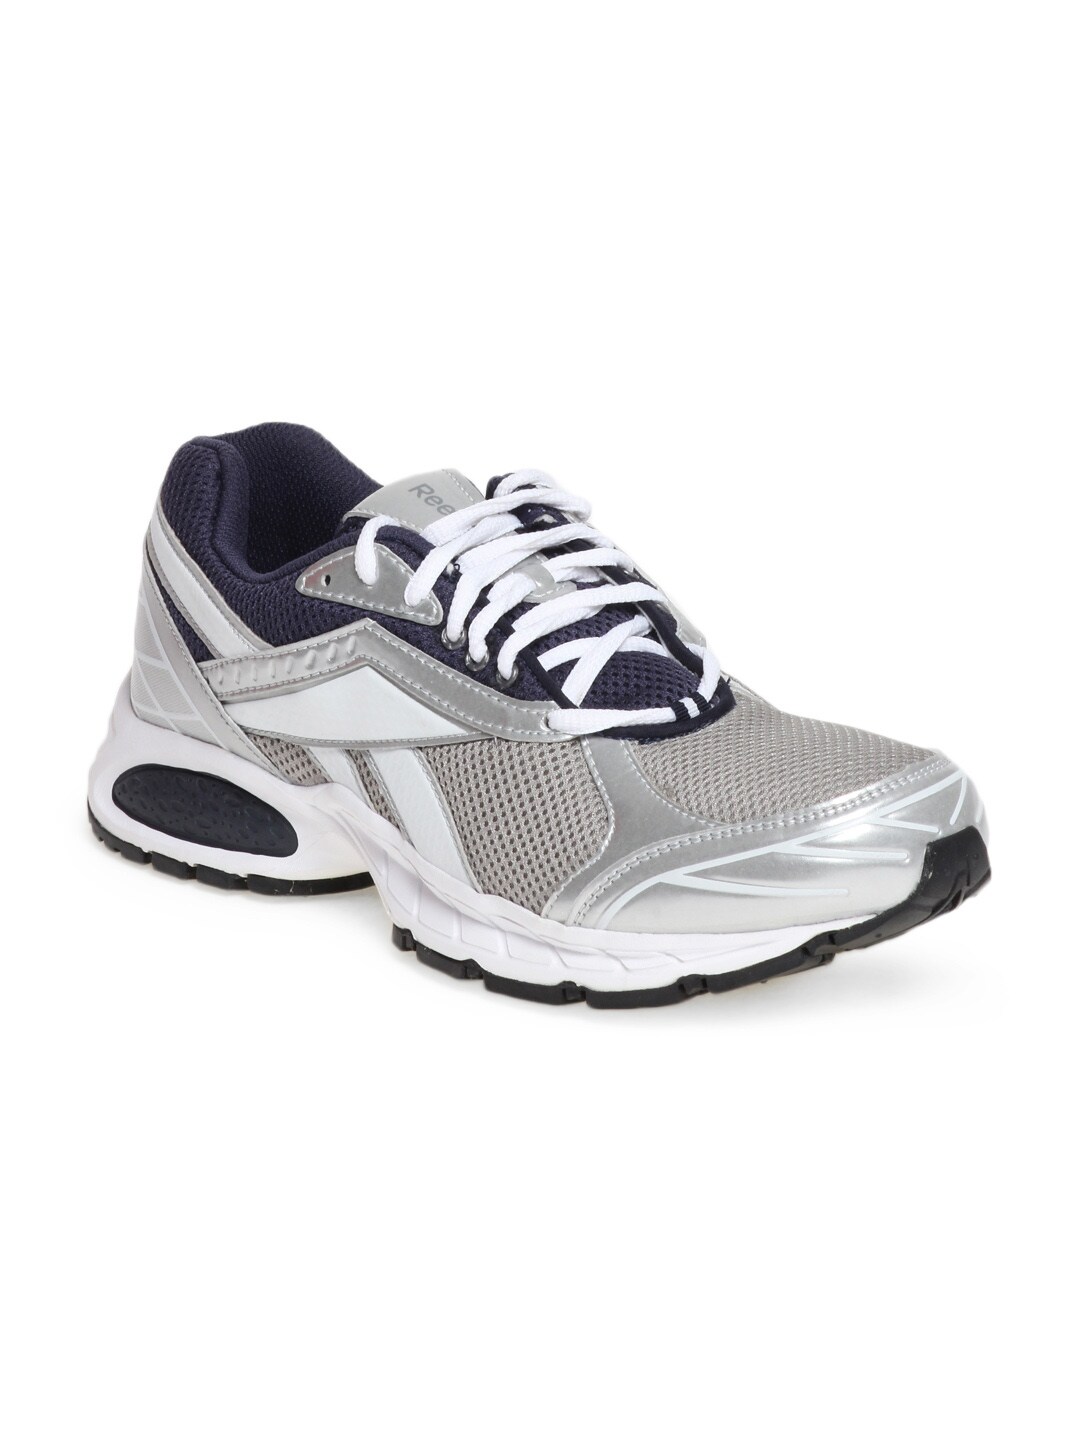 Reebok Men Grey Swift Chase Sports Shoes